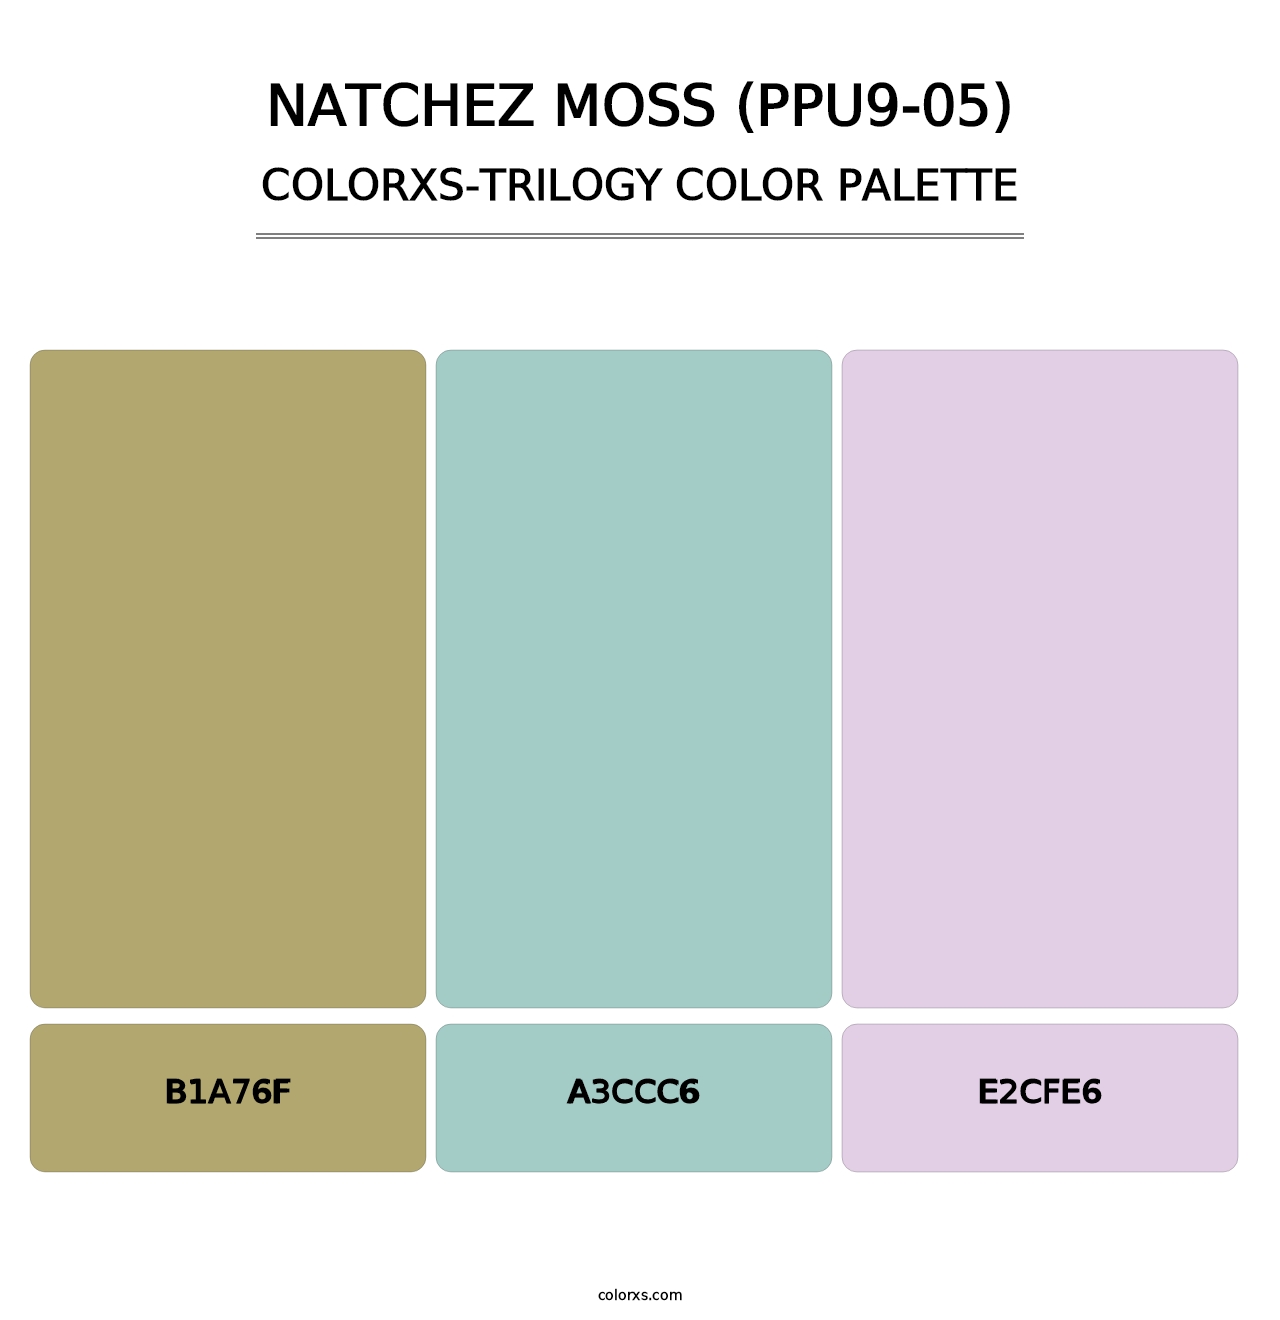 Natchez Moss (PPU9-05) - Colorxs Trilogy Palette